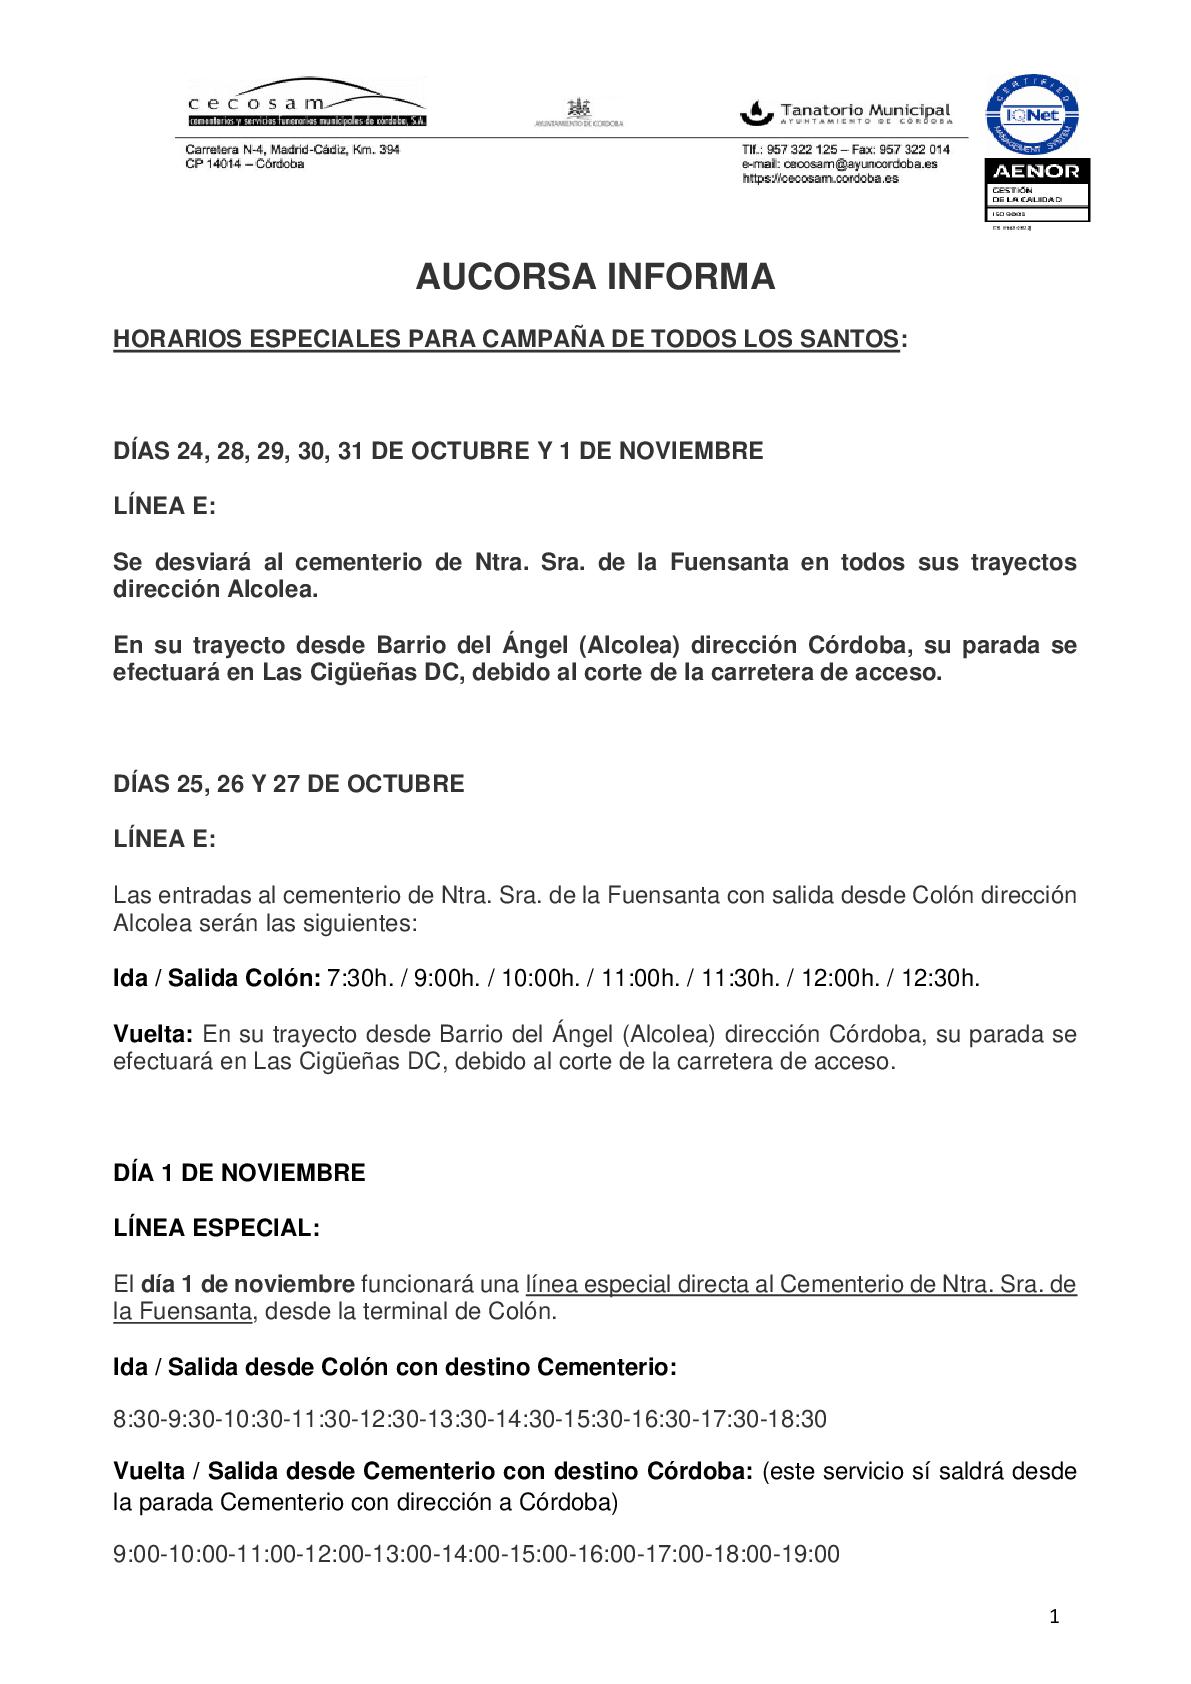 AUCORSA Servicio especial Fuensanta 2023-001